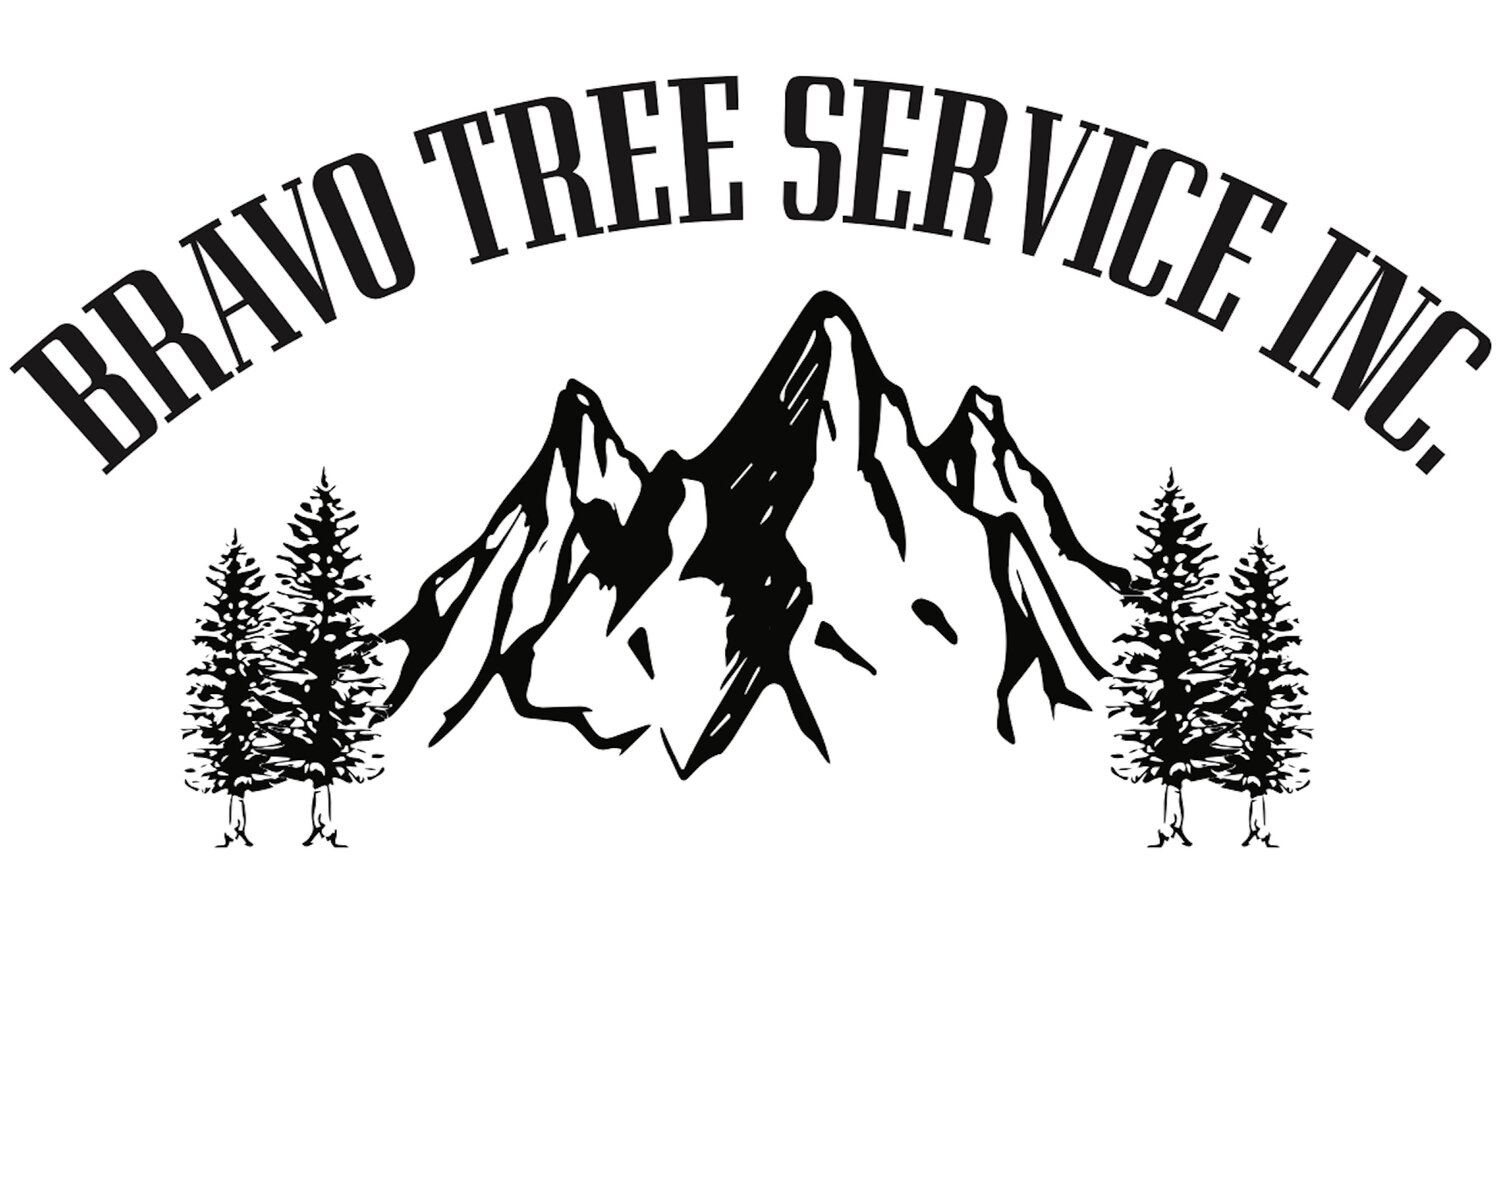 Bravo Tree Service Inc